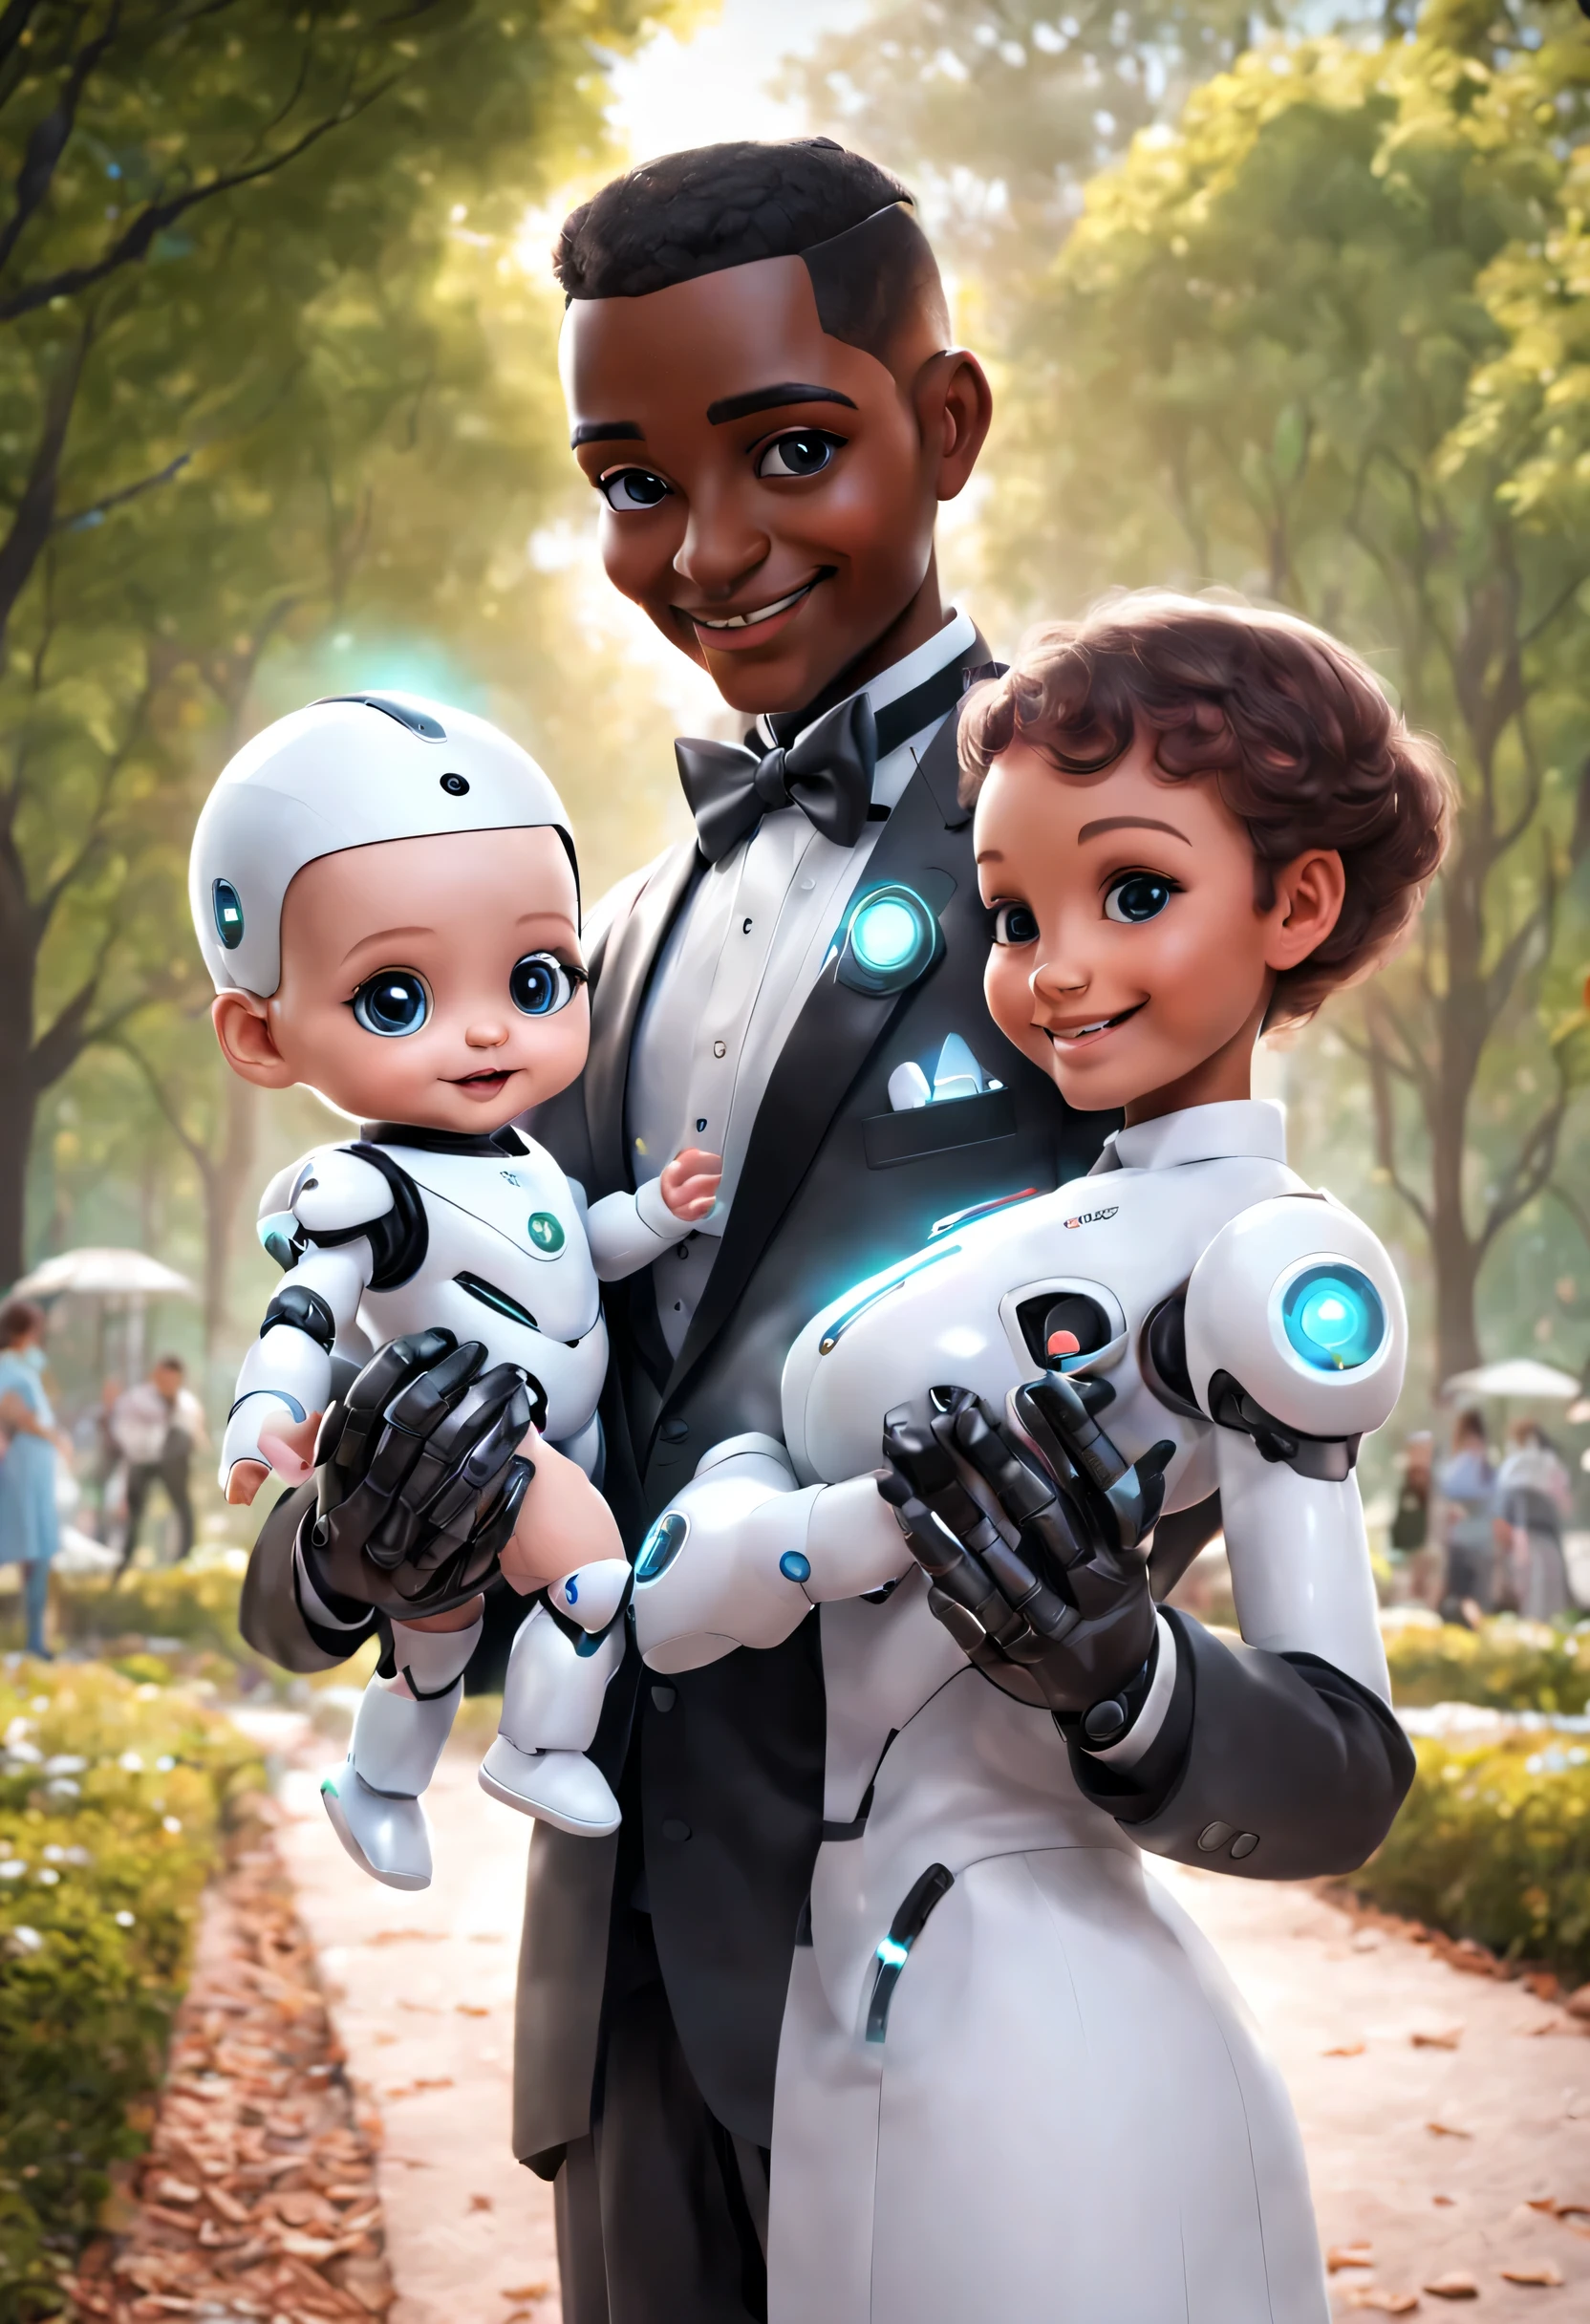 (로봇 집사는 공원에서 귀여운 인간 아기를 안고 있습니다.), 로봇 집사는 모든 과정에서 아기를 돌봅니다.. 헤드에는 고화질 아날로그 페이스 디스플레이가 장착되어 있습니다., 따뜻하고 다정한 미소, 행복하다, 홀로그램 흰색 집사복 드레스슈트 착용, 미래의 캐릭터 디자인, 공상 과학 소설, 블랙 테크놀로지, 3D, 사이버 펑크 스타일
,